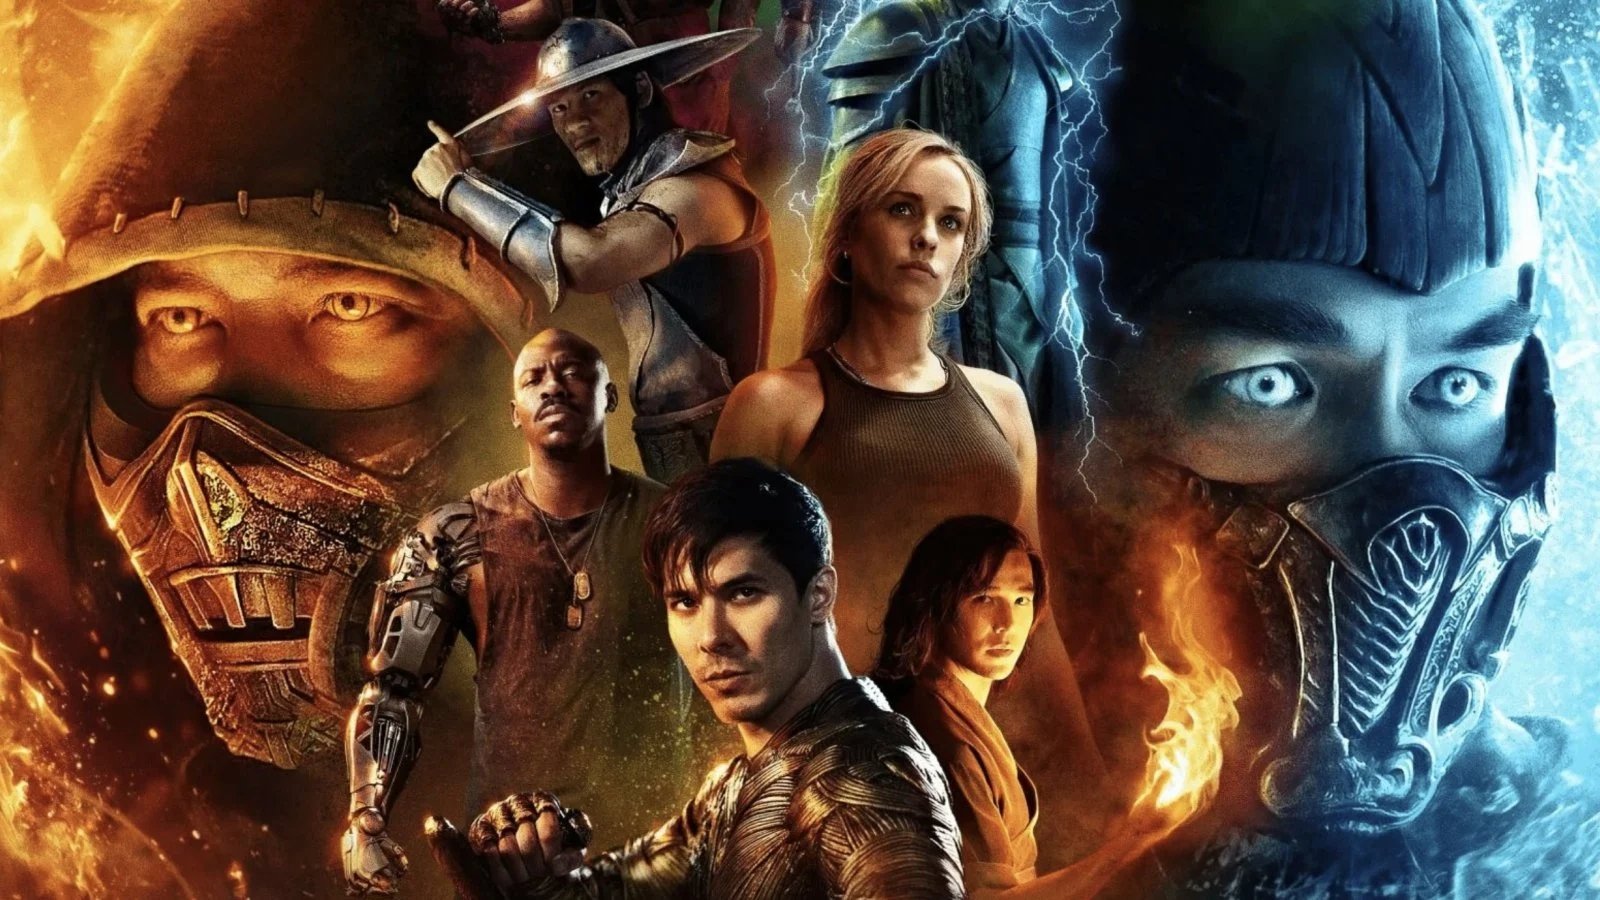 Mortal Kombat: concluse le riprese, per il trailer 'ci vorrà un po' di tempo'